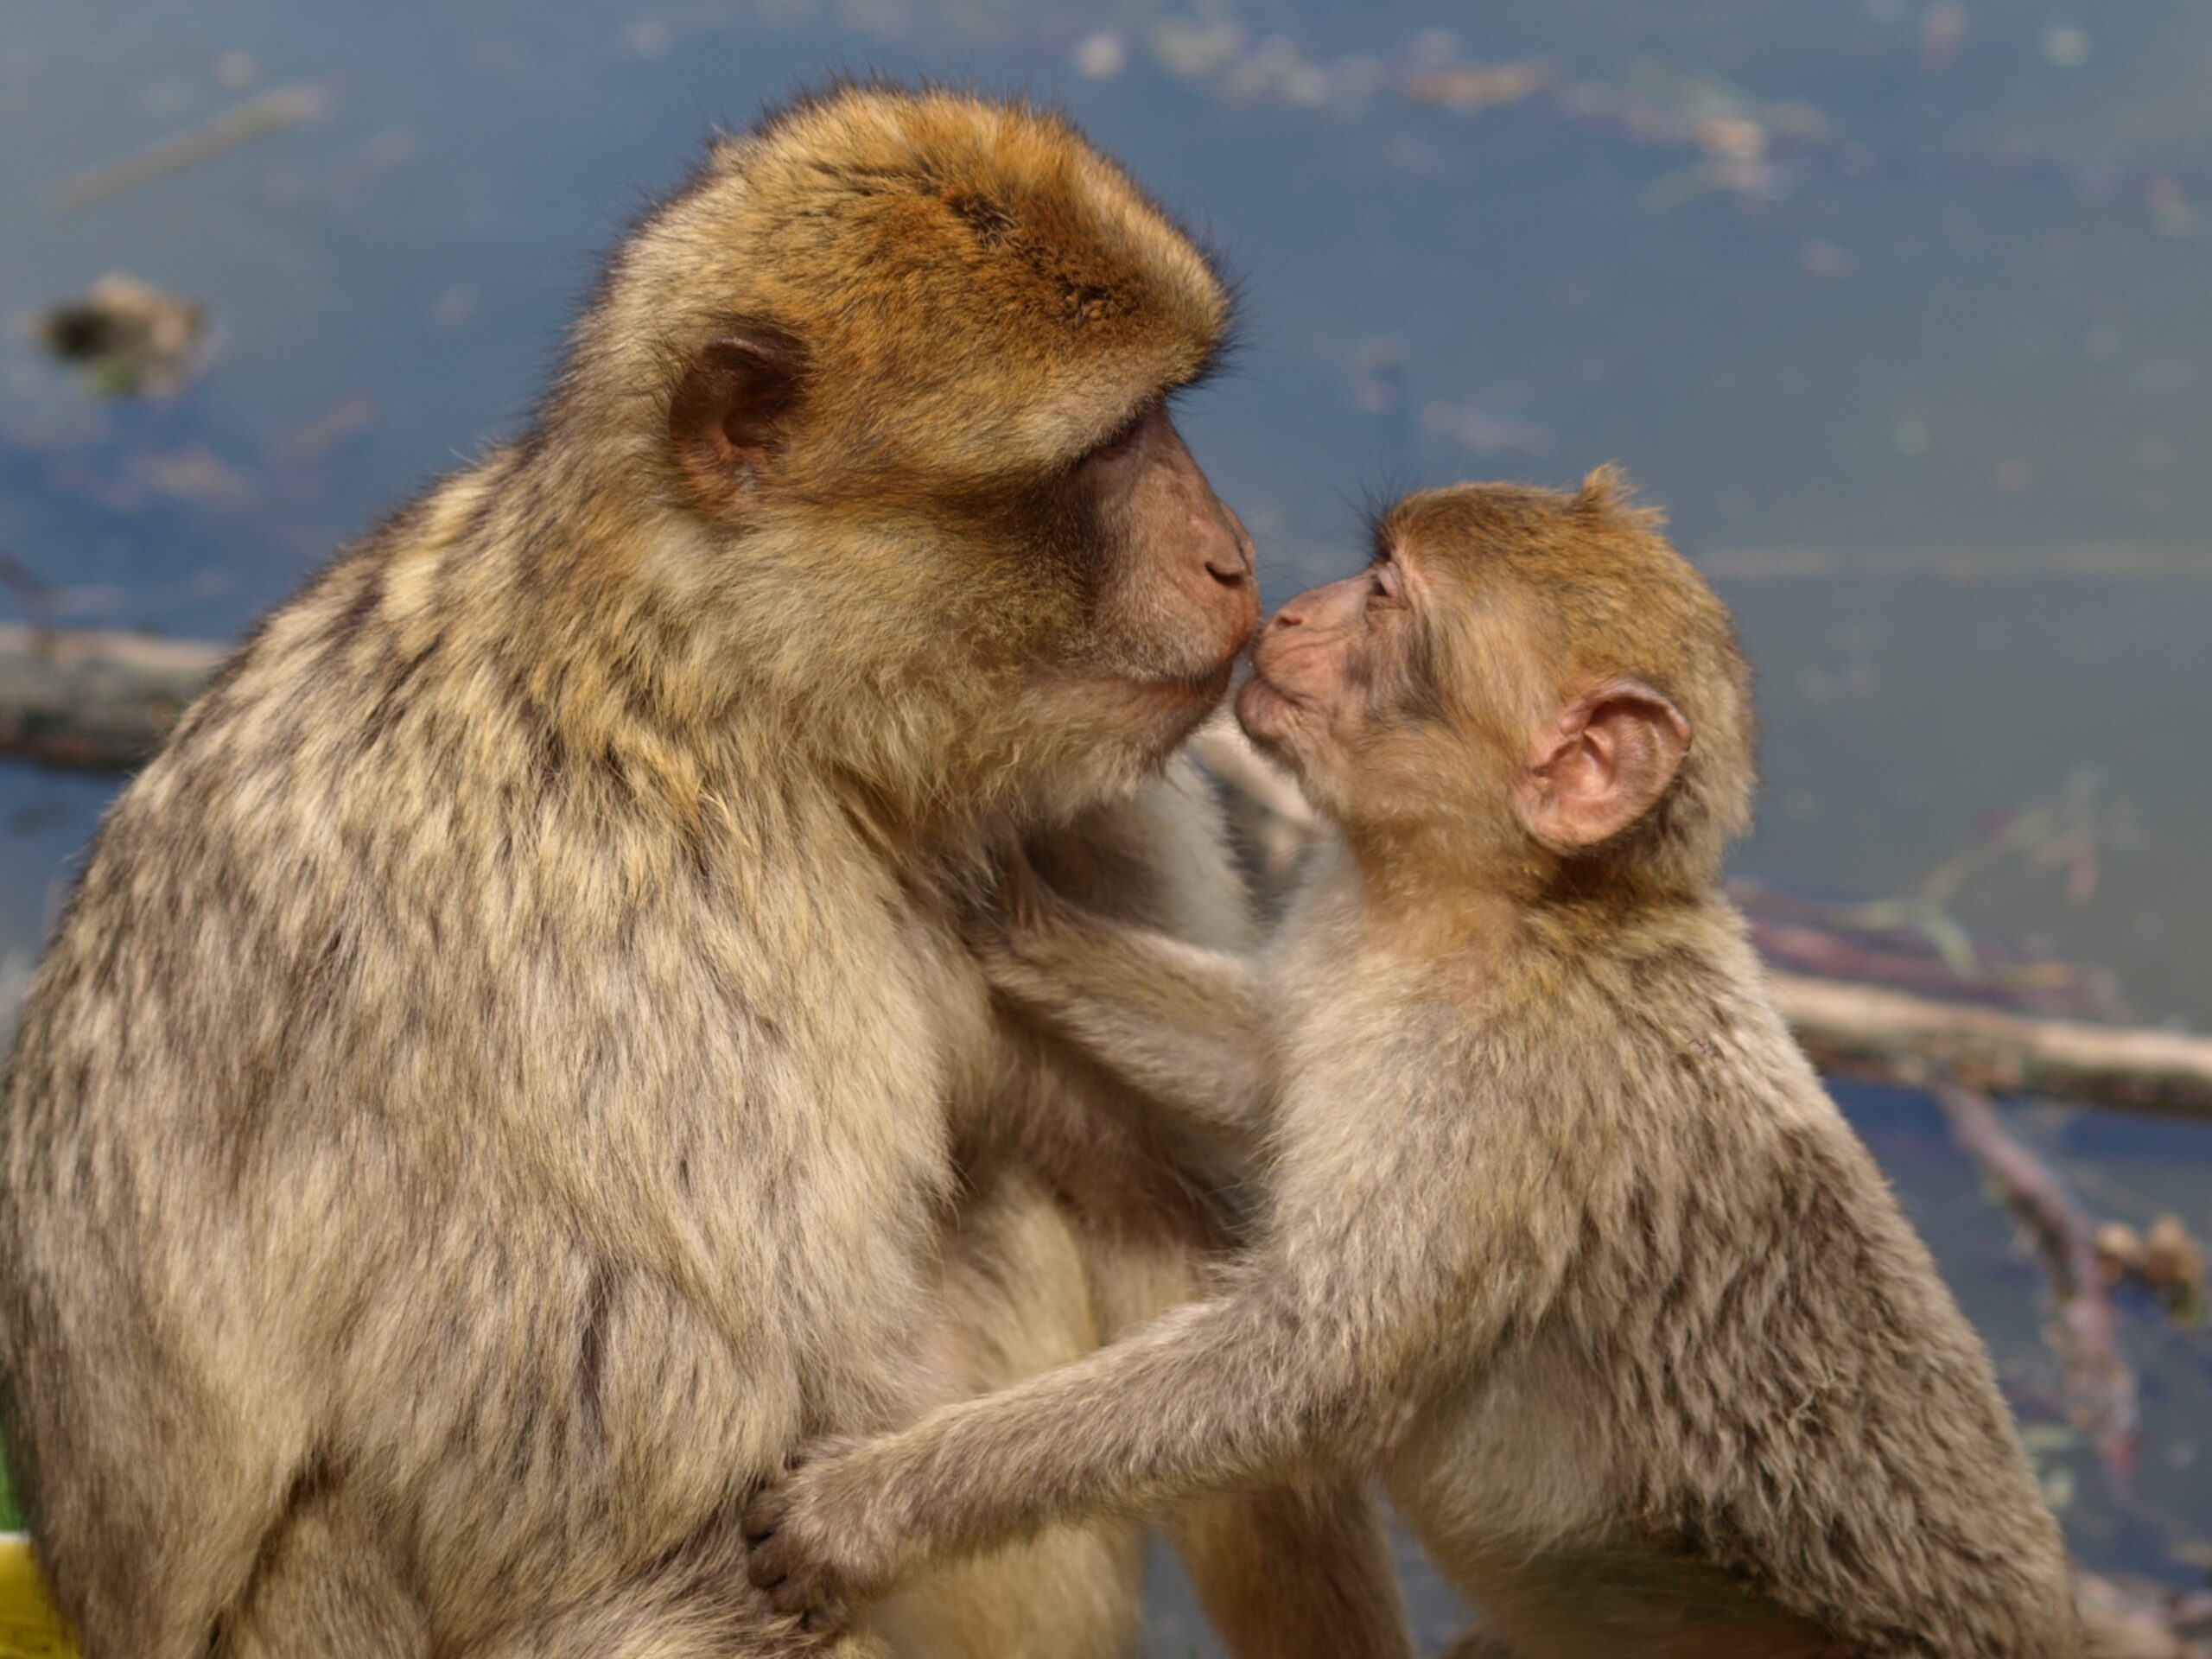 В Китае вывели новый вид обезьяны со светящимися глазами и пальцами